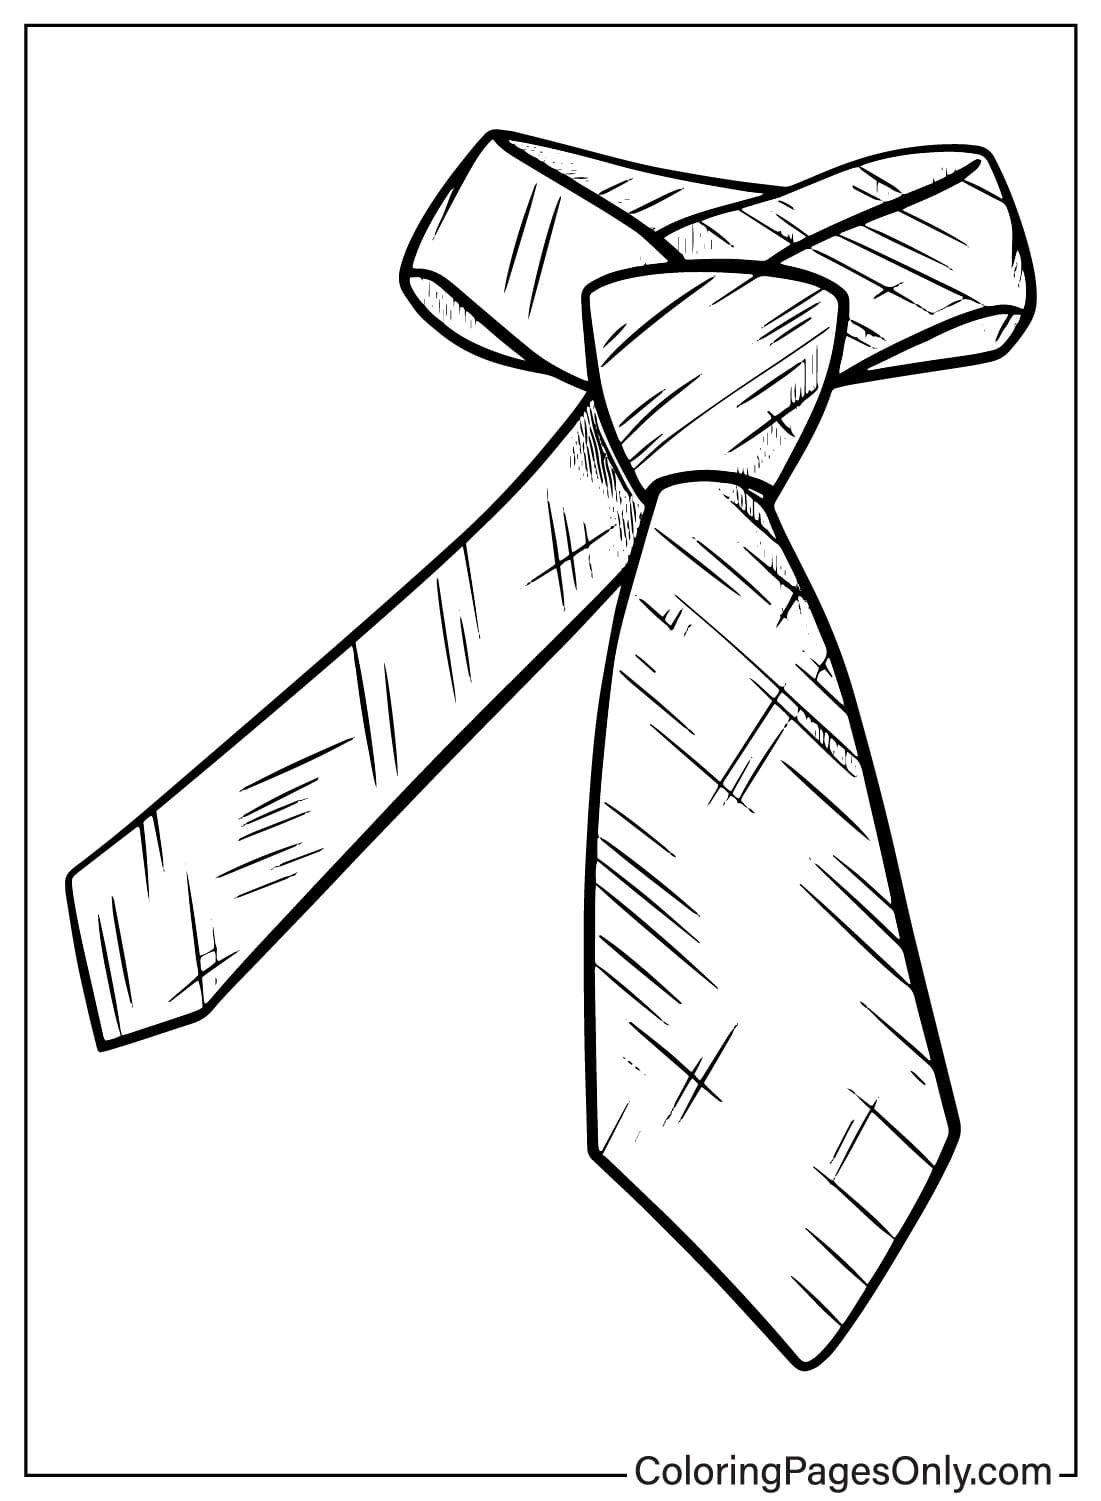 领带彩页可从领带打印